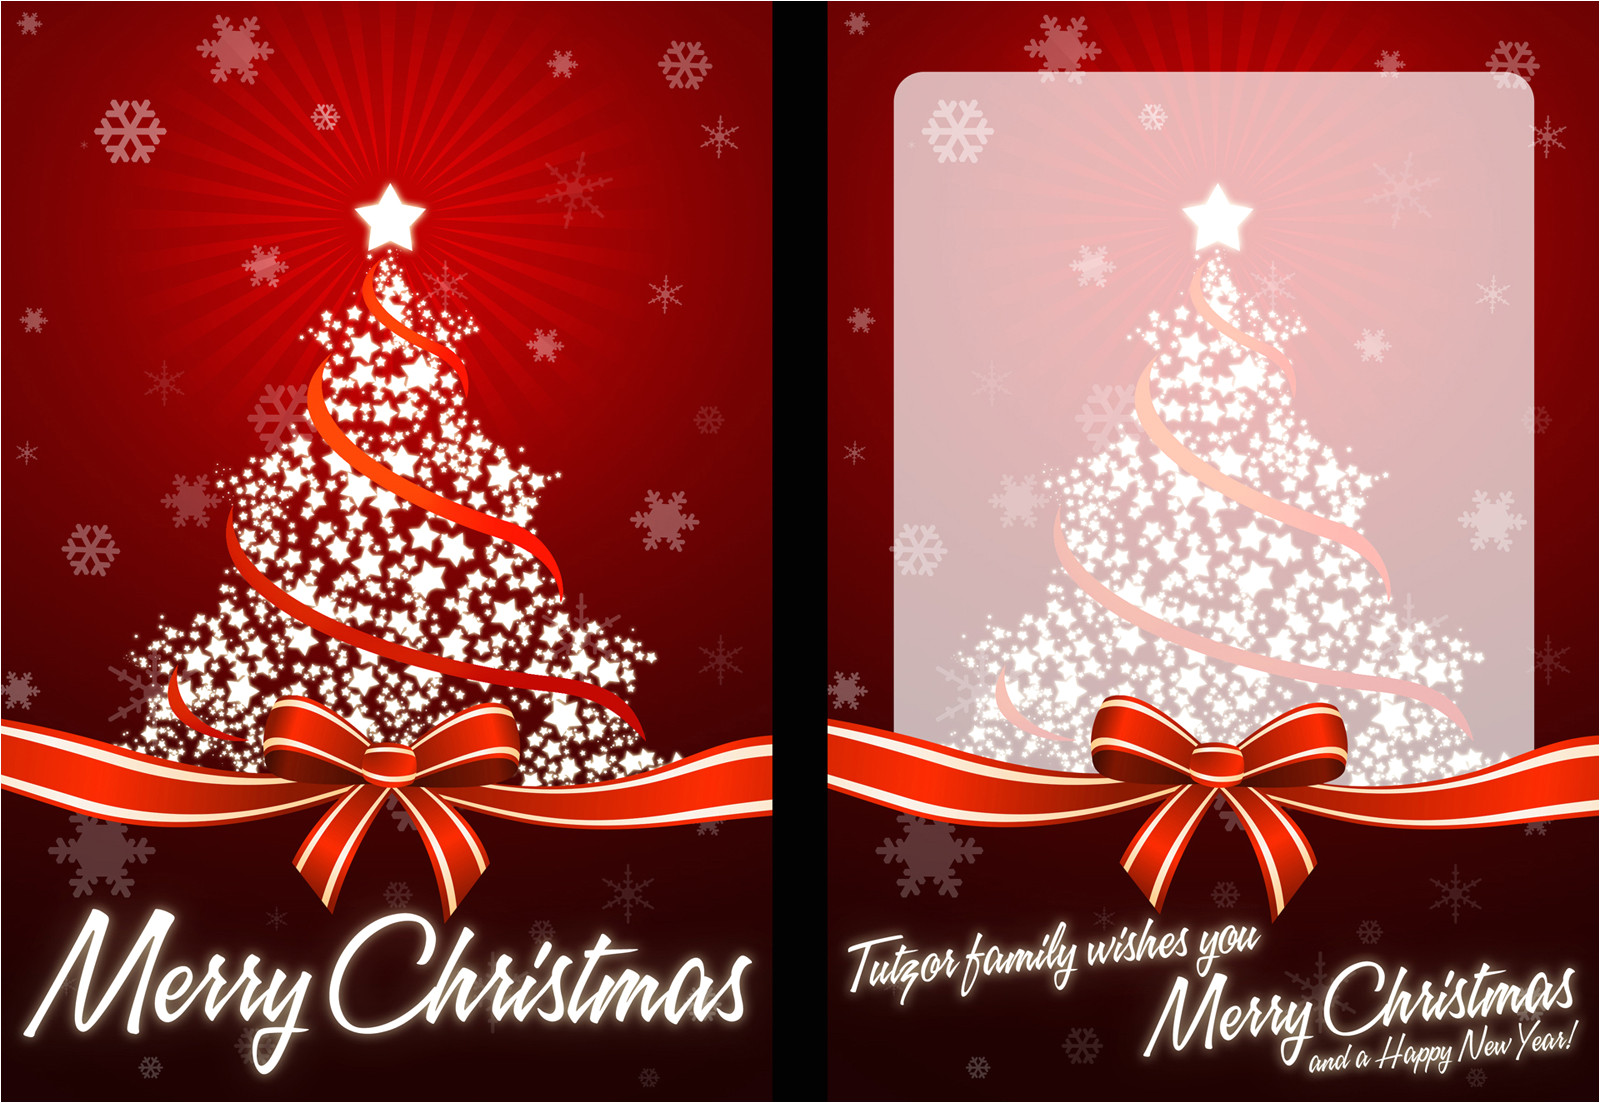 nice christmas cards jpg